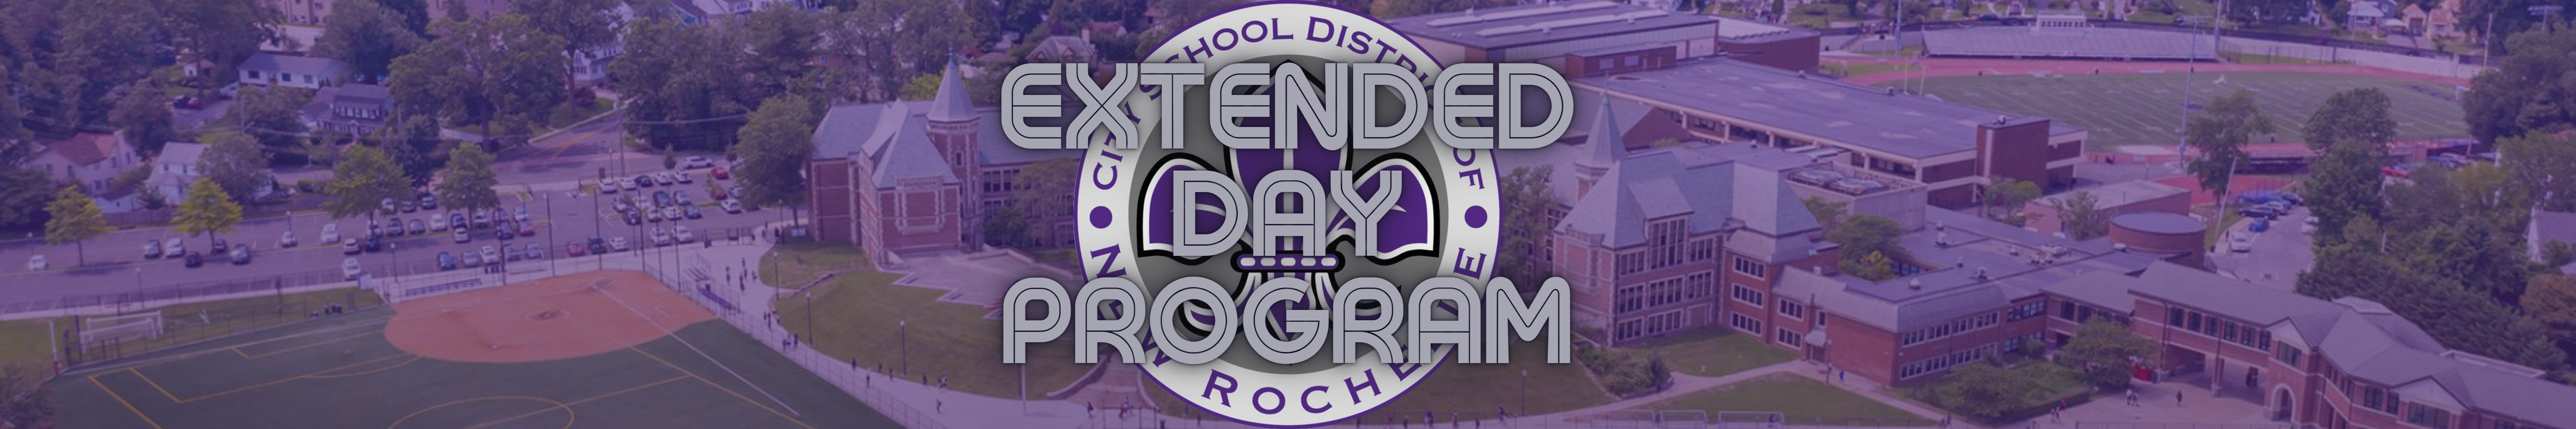 Extended Day Program banner